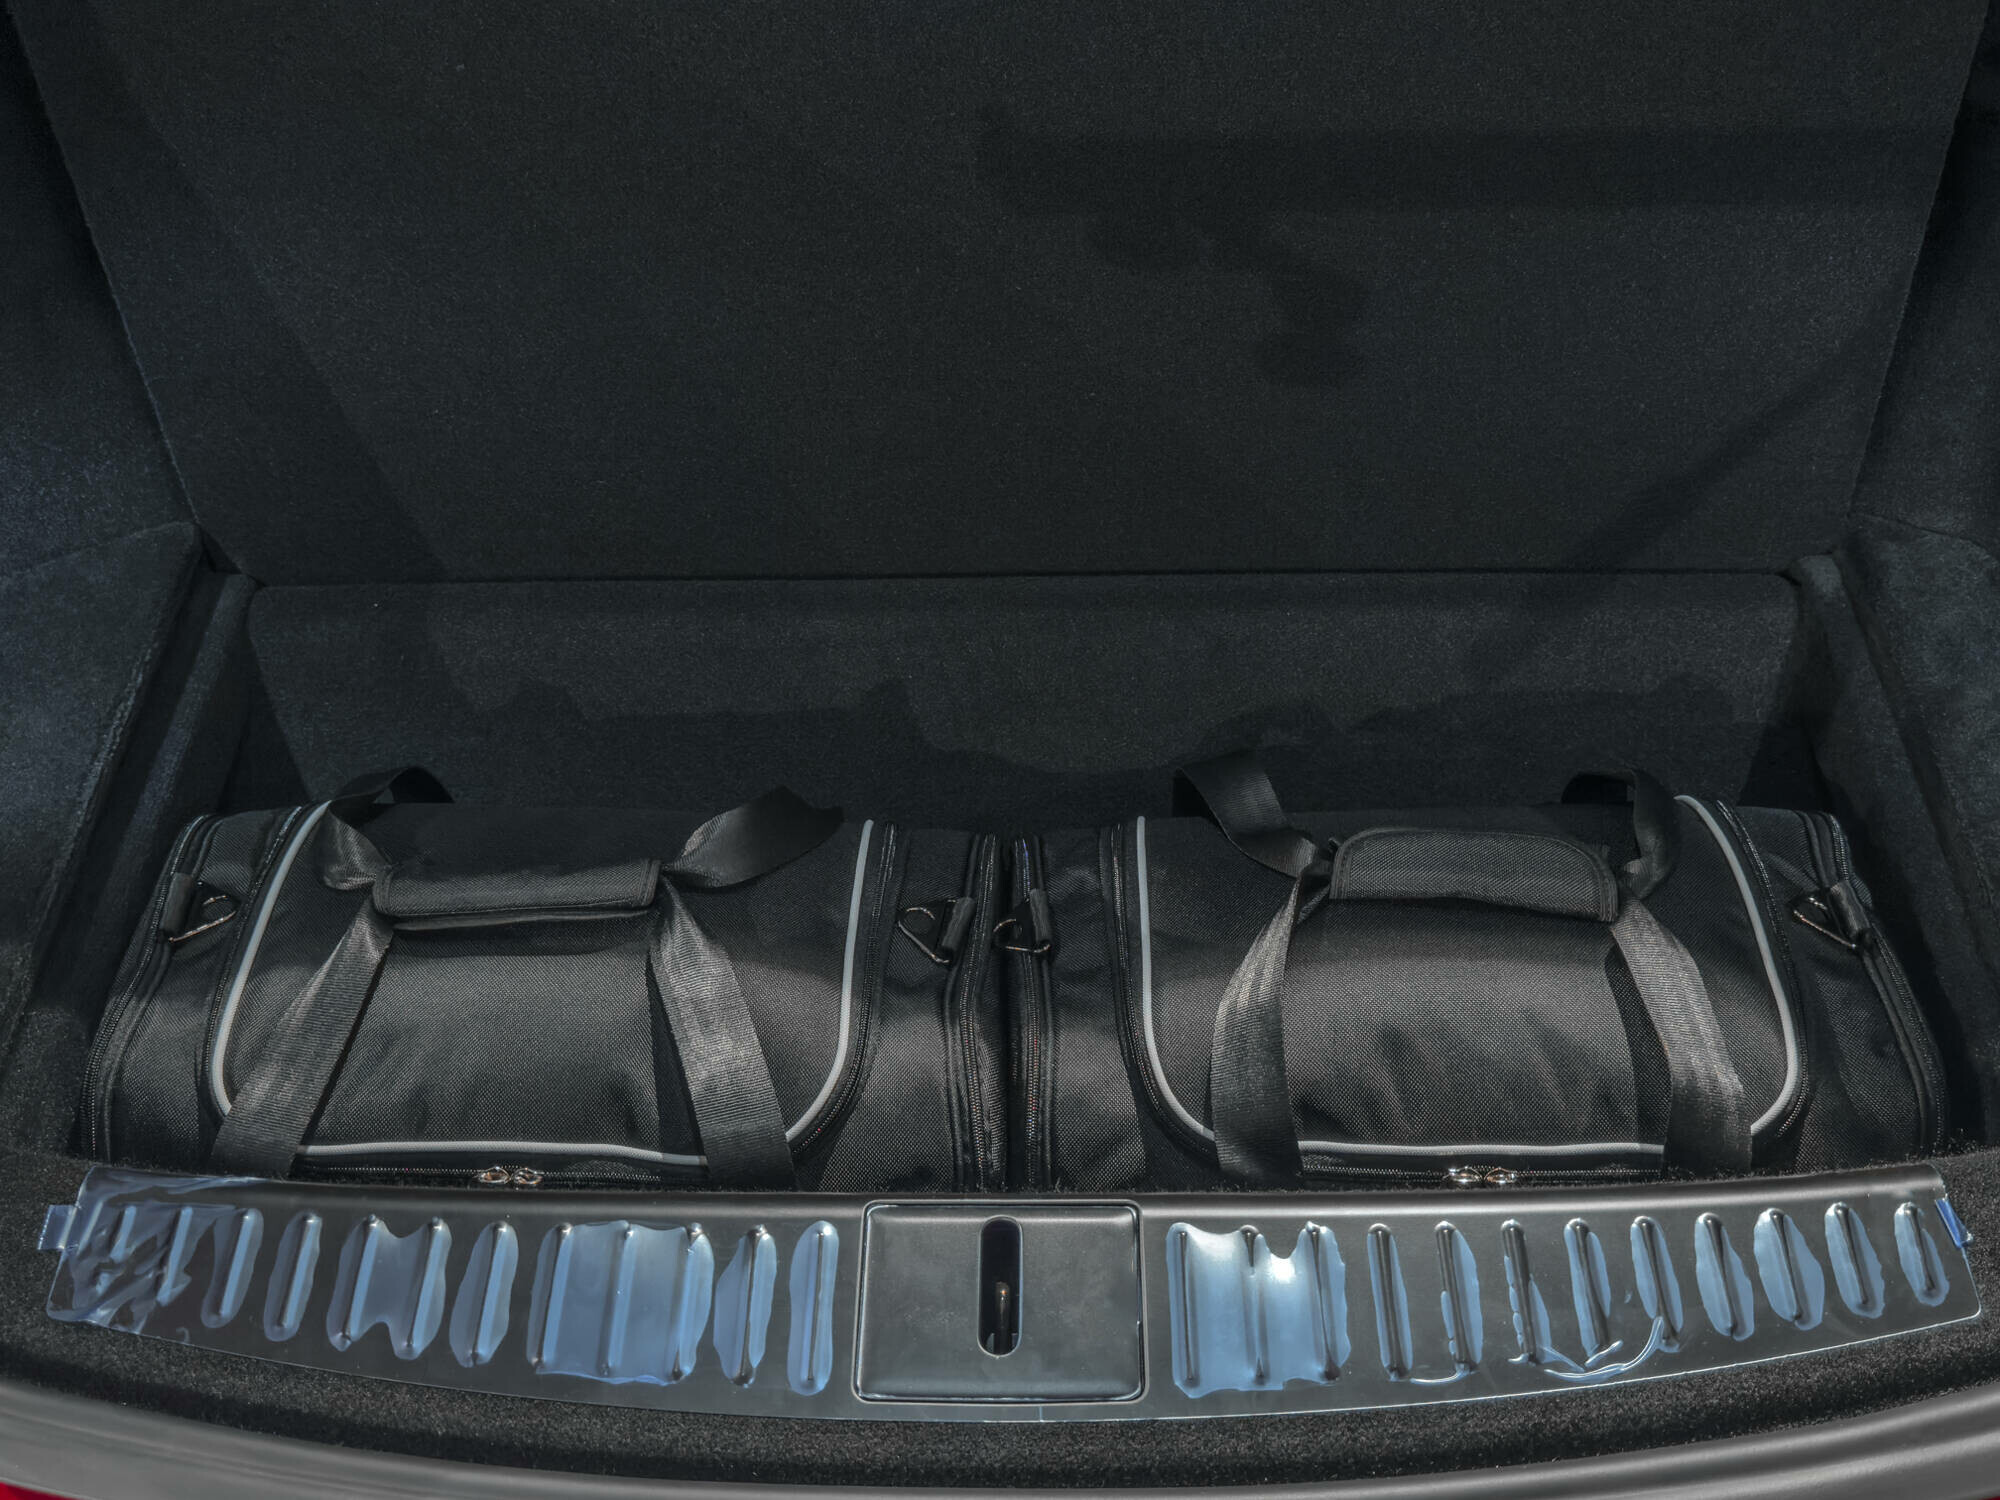 TESLA MODEL S EV 2021+ CAR BAGS SET 7 PCS